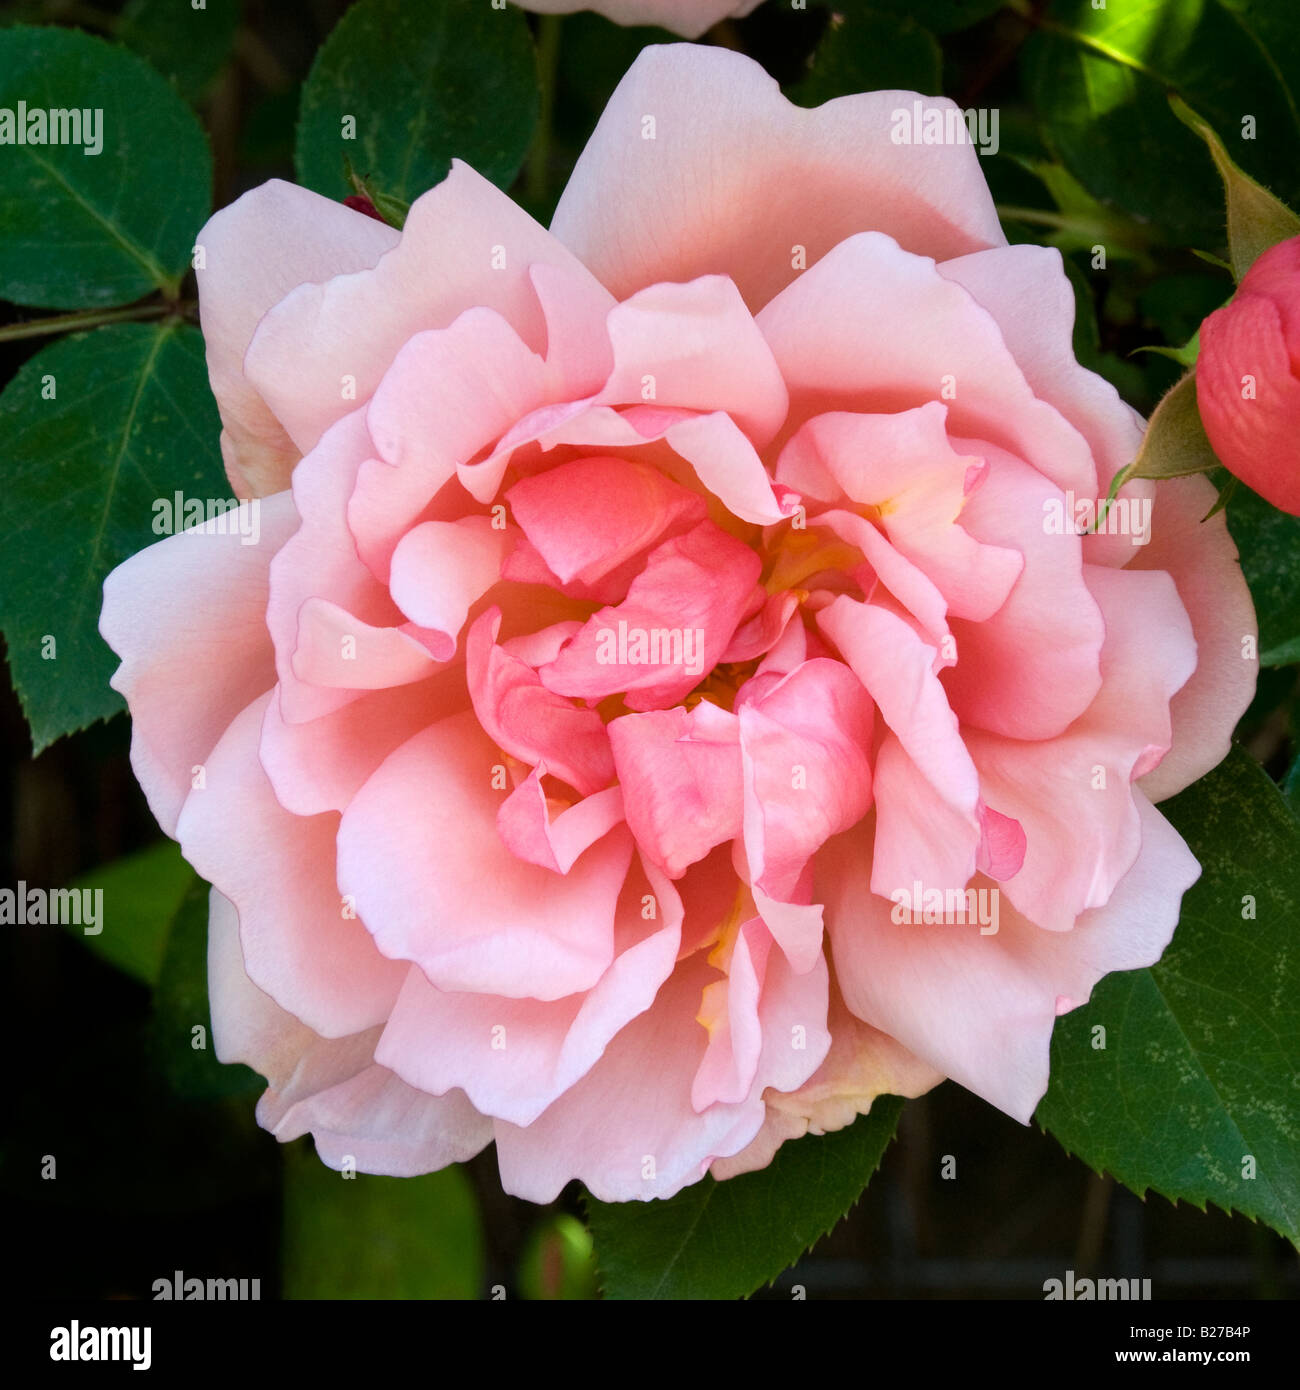 Flower of Rambling Rose Albertine Stock Photo